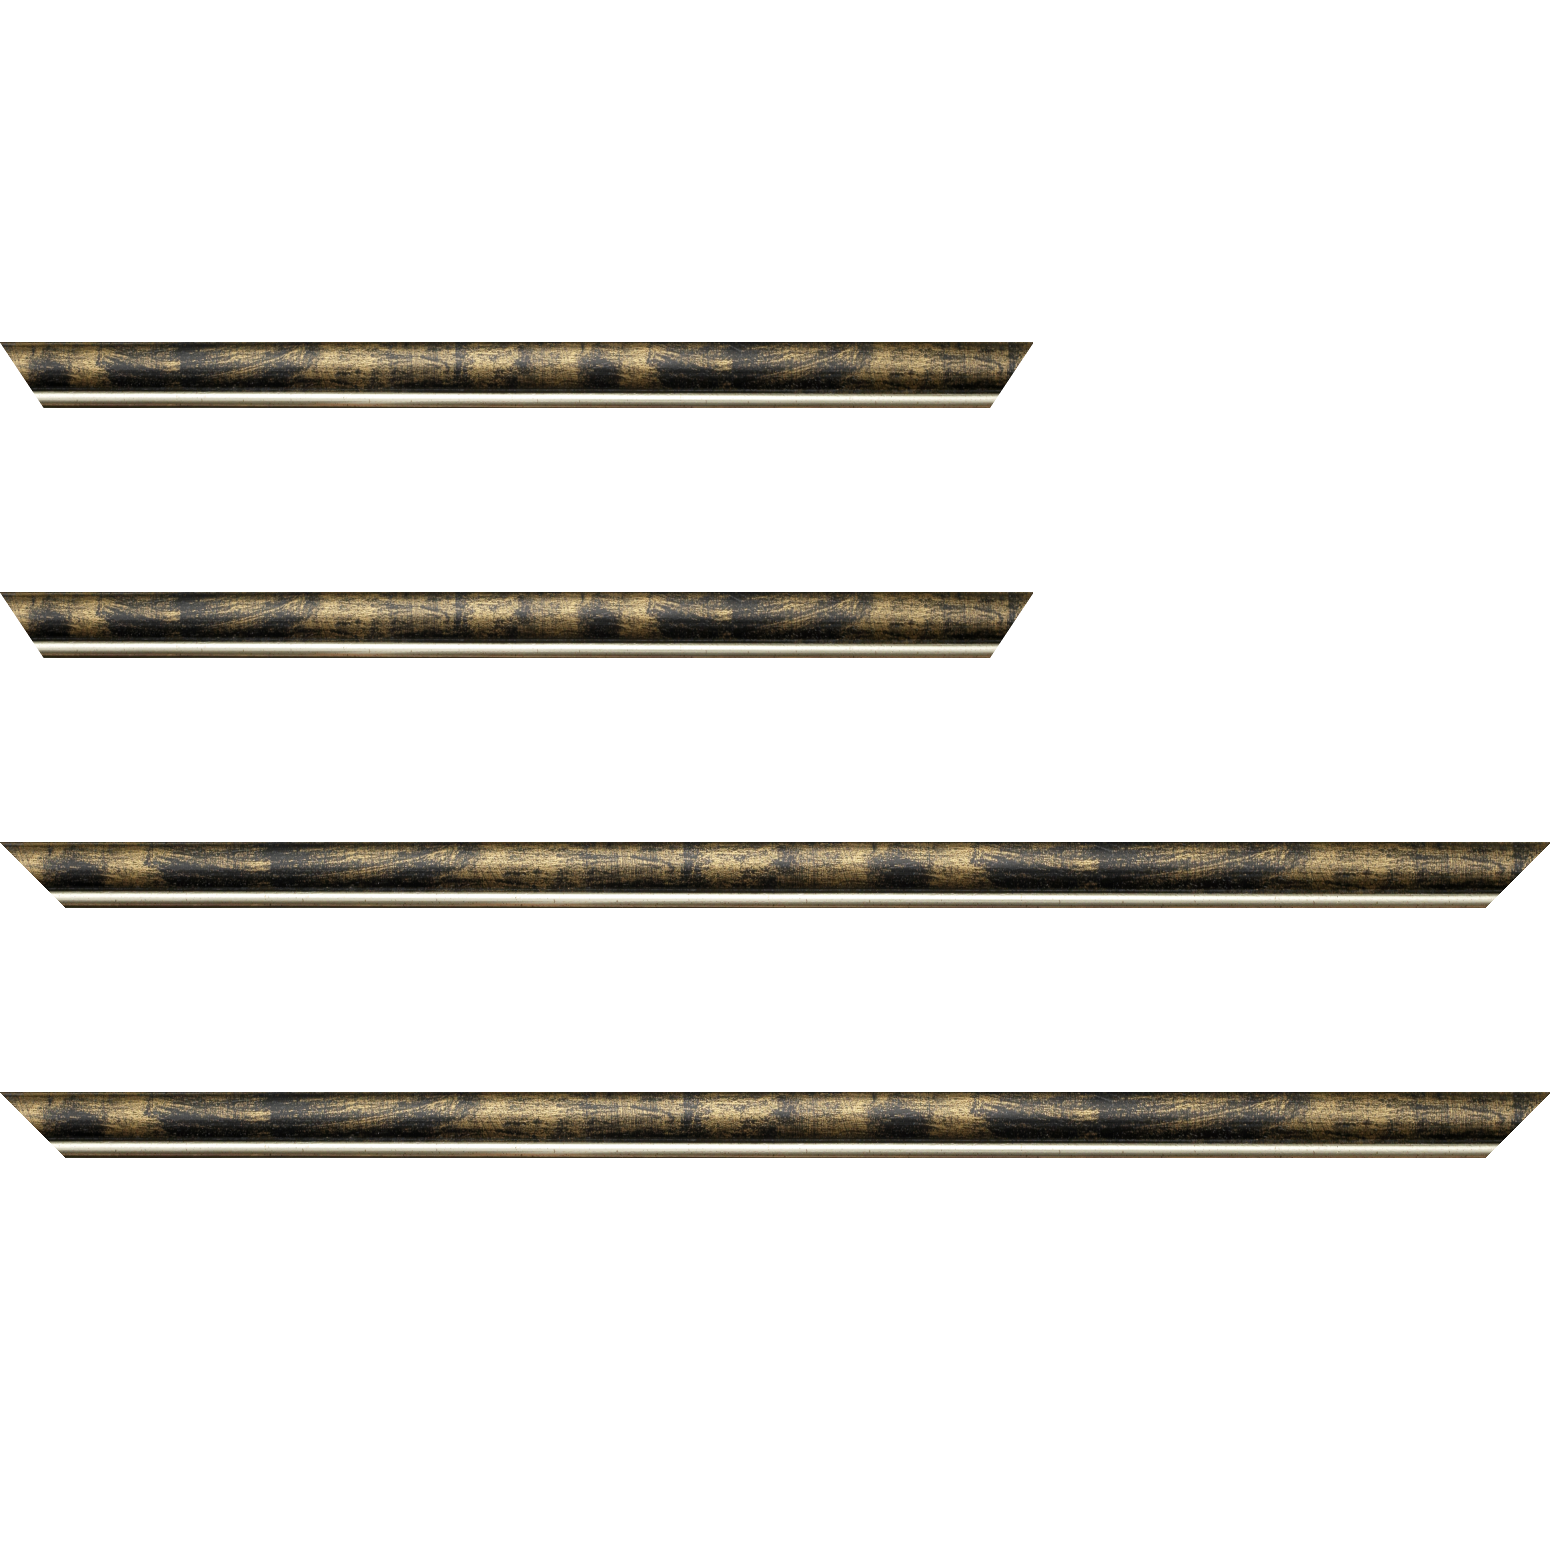 Baguette bois profil arrondi largeur 2.1cm  couleur noir fond or filet argent chaud - 50x60